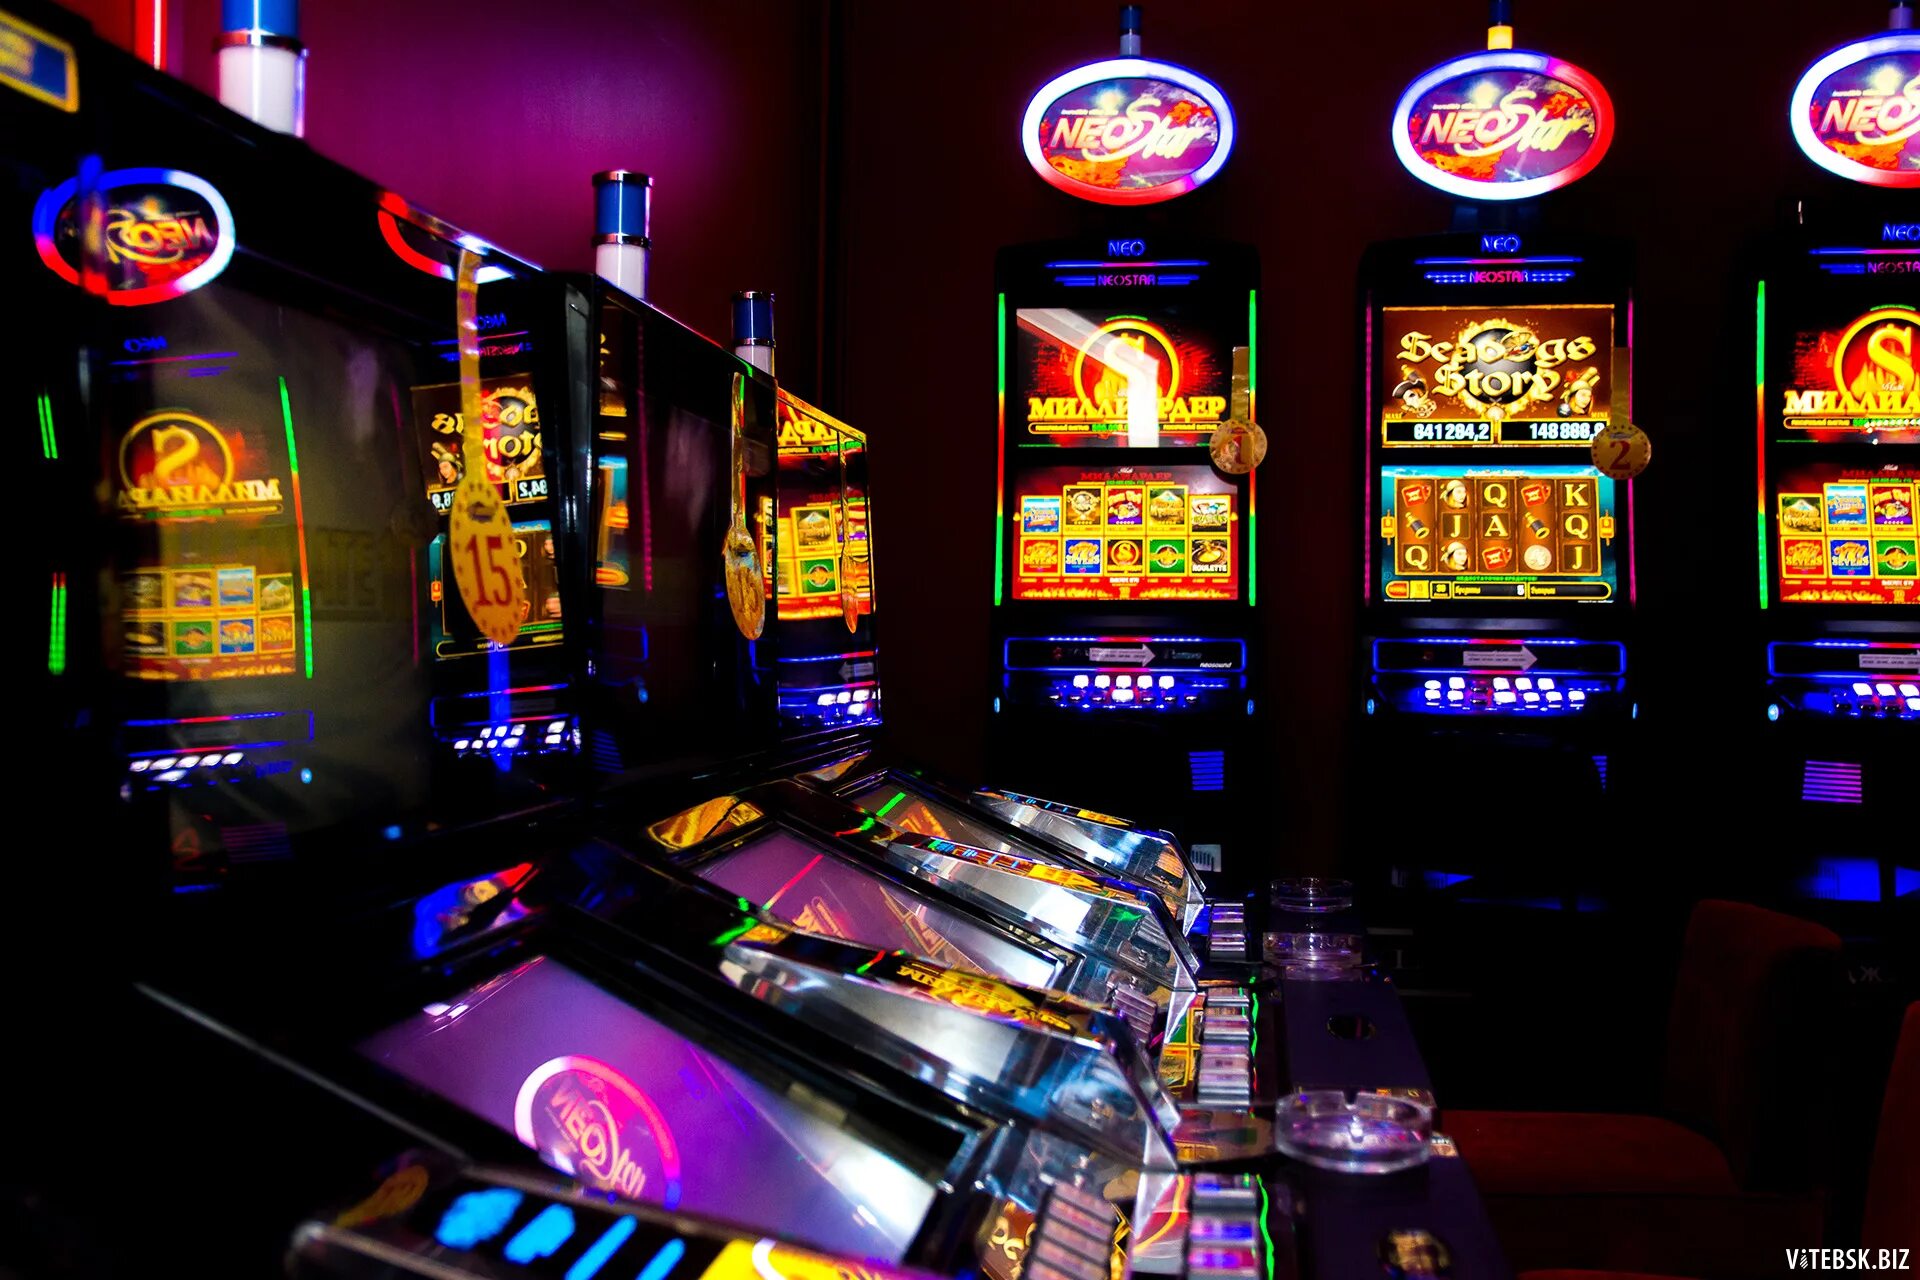 Слотосфера игровые автоматы казино. Игровой зал 777 зал популярных игровых аппаратов. Азартные игровые автоматы гаминатор. Название игровых автоматов. Какие самые лучшие игровые автоматы